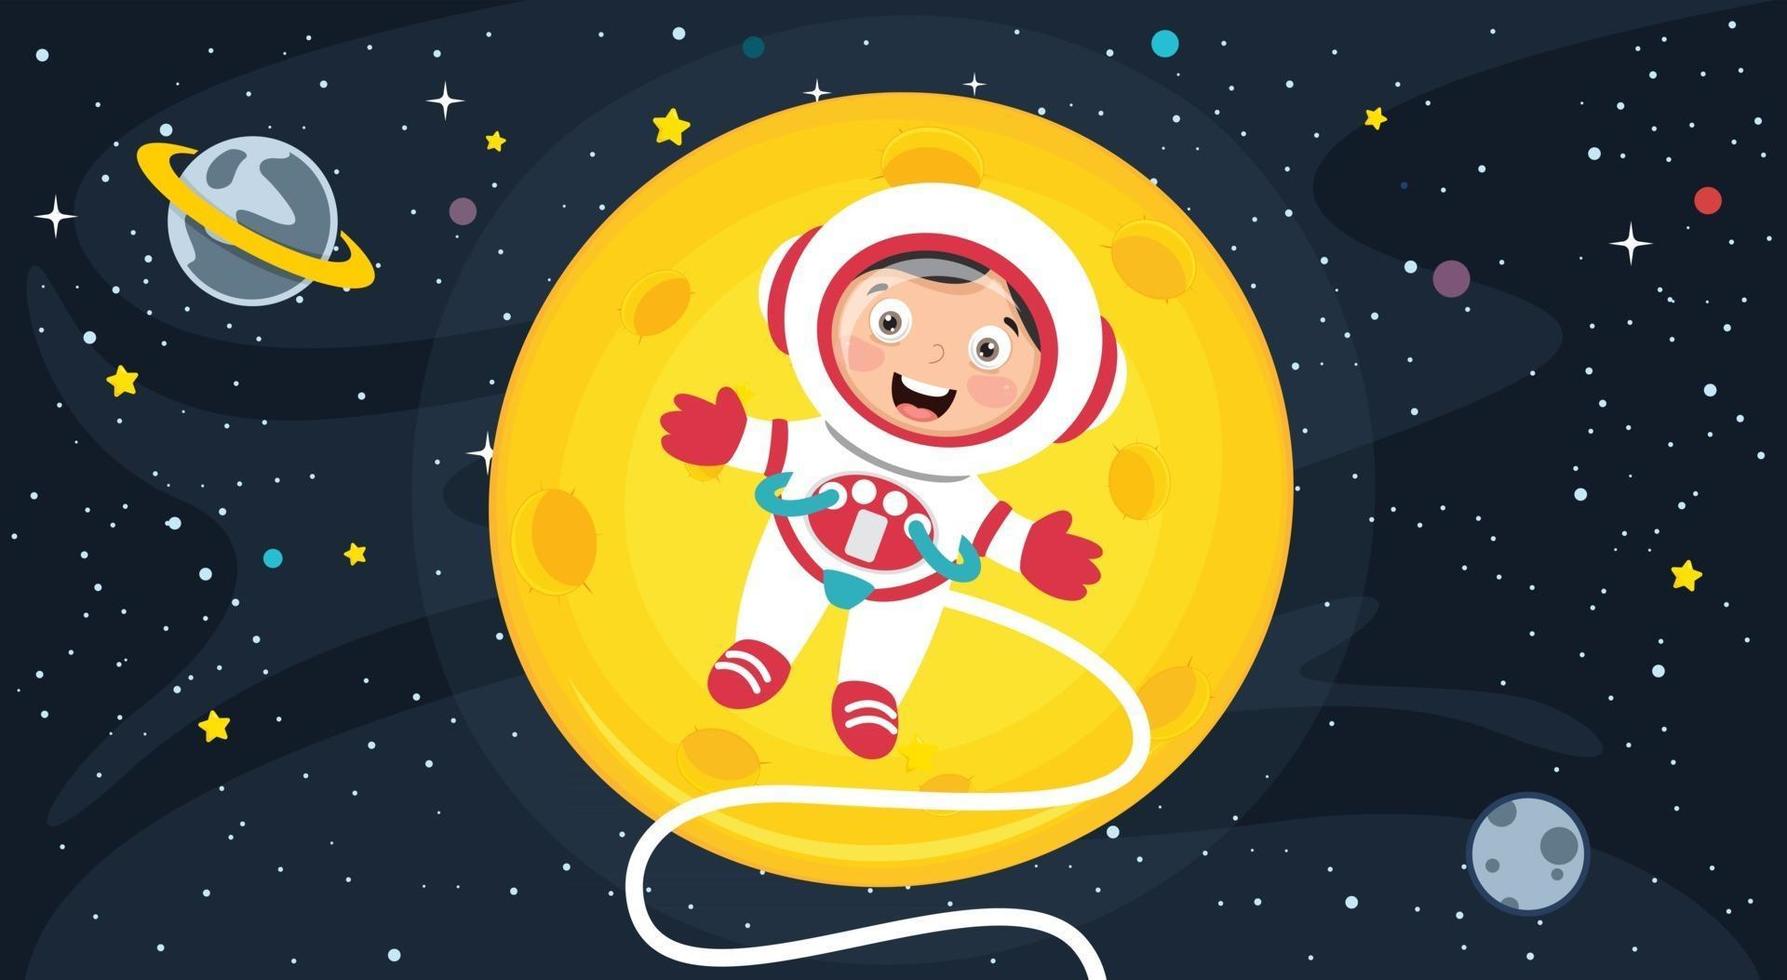 kleine astronaut die onderzoek doet in de ruimte vector